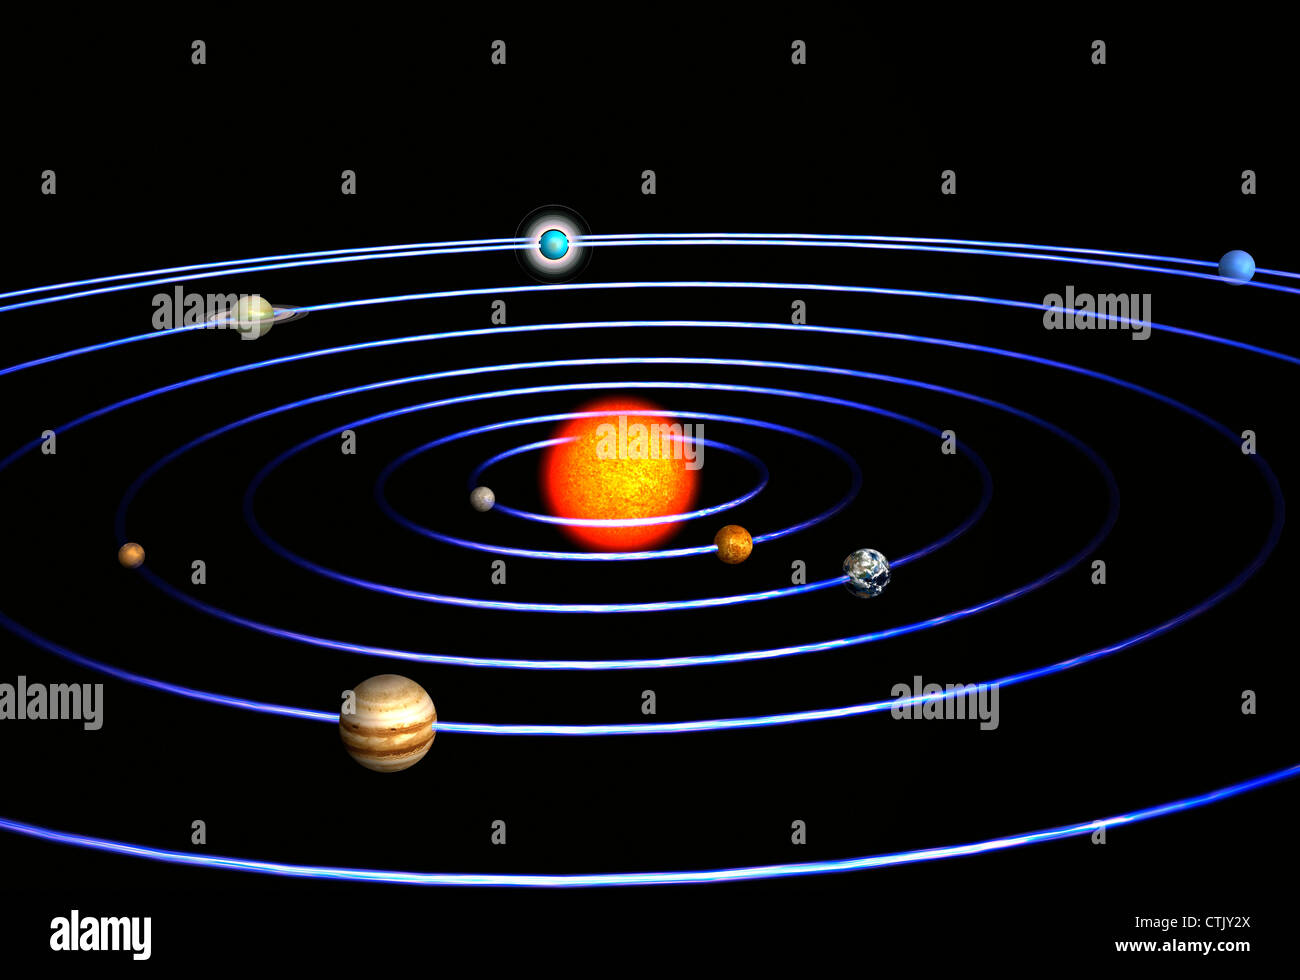 Système solaire avec le soleil au centre et les planètes Mercure, Vénus, la Terre, Mars, Jupiter, Saturne, Uranus, Neptune (symbolique) Banque D'Images